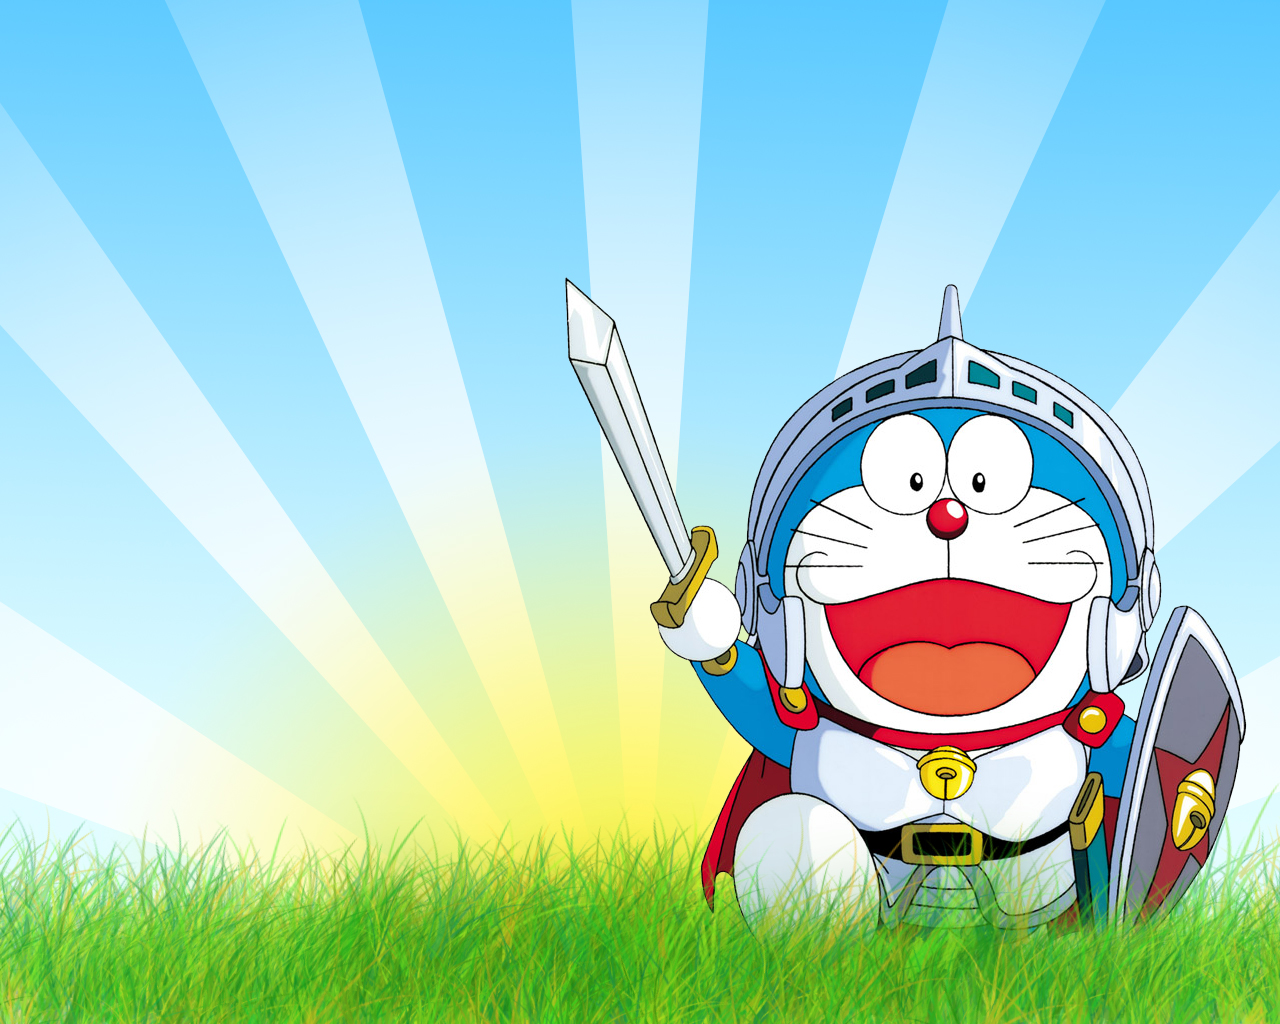 Chúc mừng bạn đã tìm đến bộ sưu tập hình nền Doraemon HD Wallpapers đẹp mắt và độc đáo nhất! Với những hình ảnh sáng tạo, tươi mới và đầy màu sắc, chắc chắn bạn sẽ tìm thấy một tác phẩm hợp với phong cách của mình để trang trí cho chiếc máy tính của mình. Bạn đã sẵn sàng để khám phá ngay bây giờ?